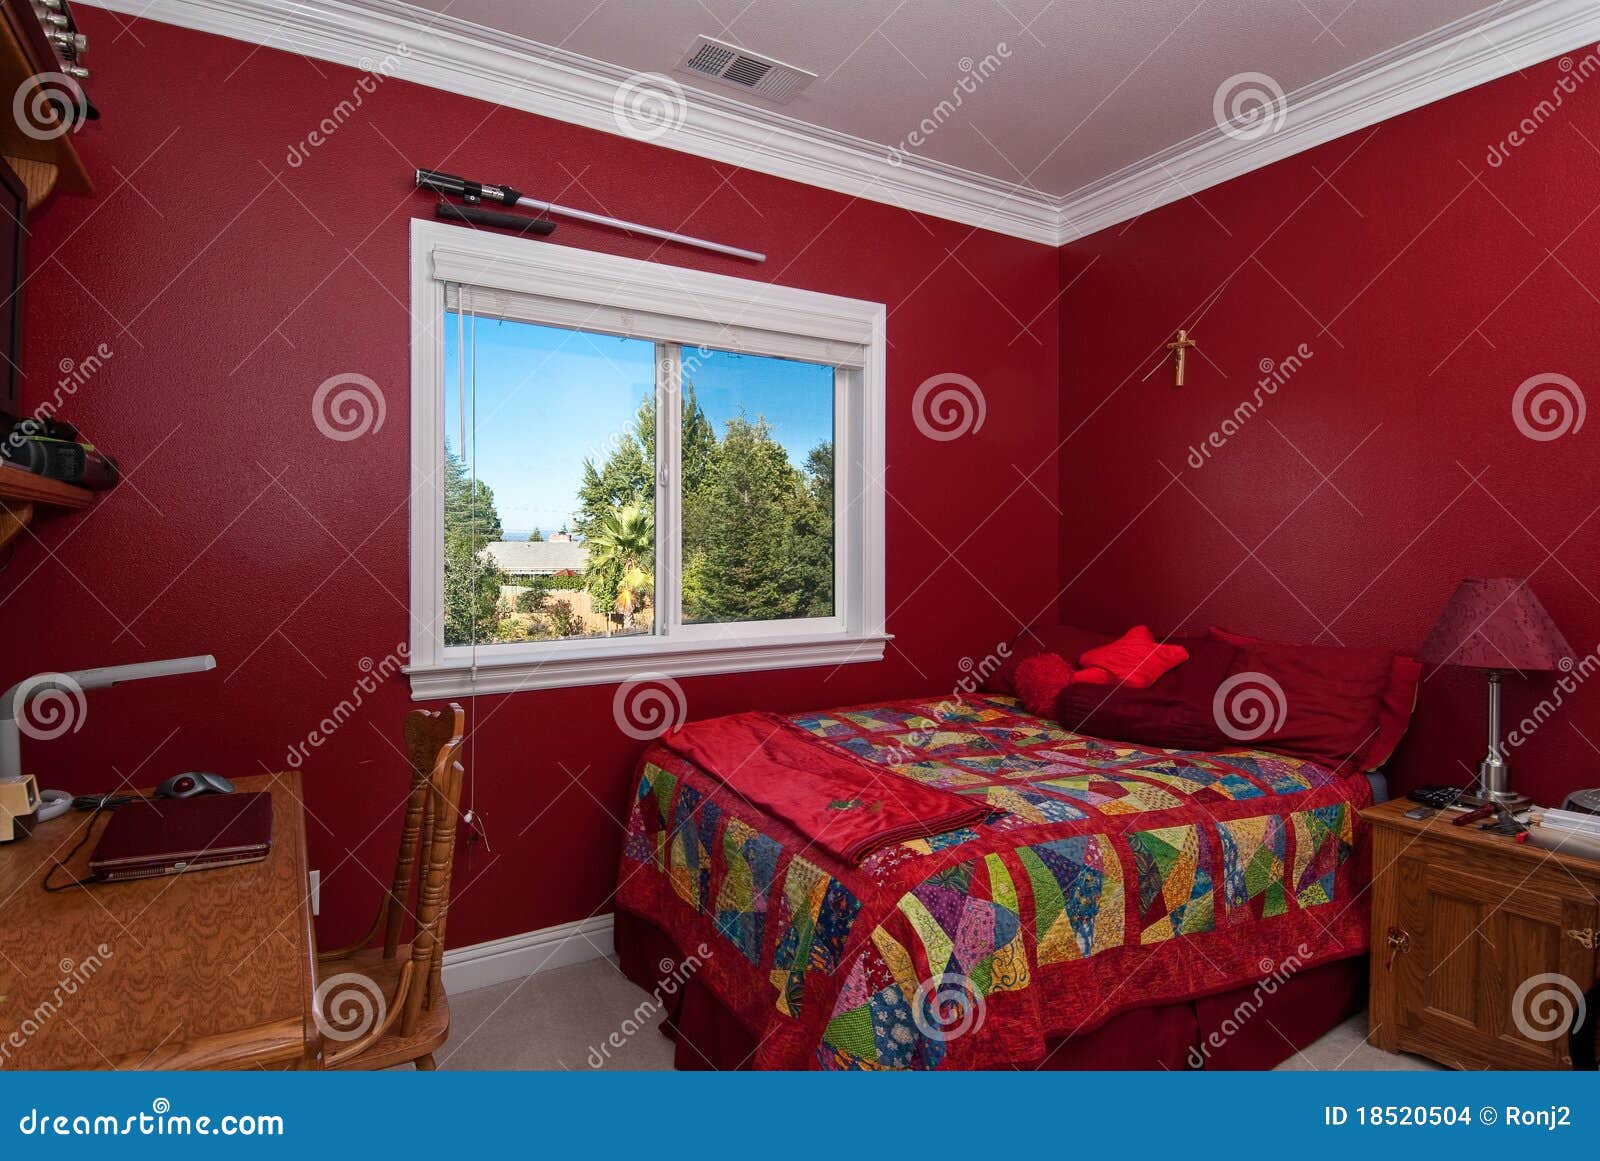 Rotes Schlafzimmer Stockbilder Bild 18520504